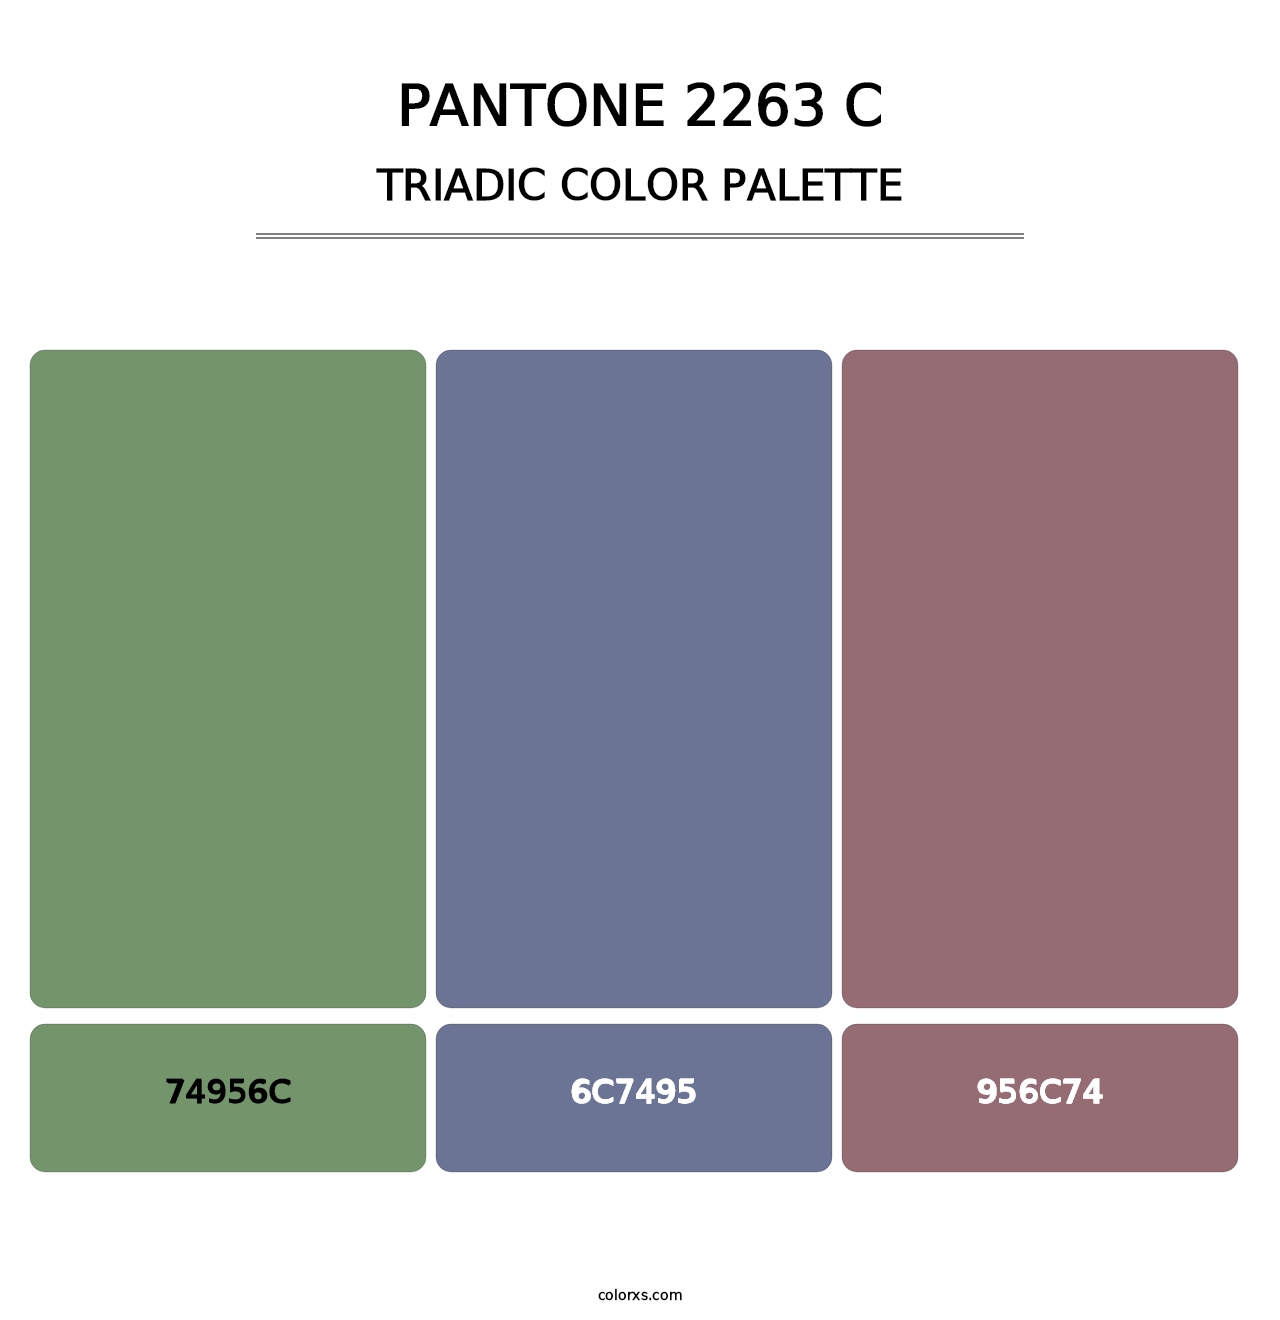 PANTONE 2263 C - Triadic Color Palette